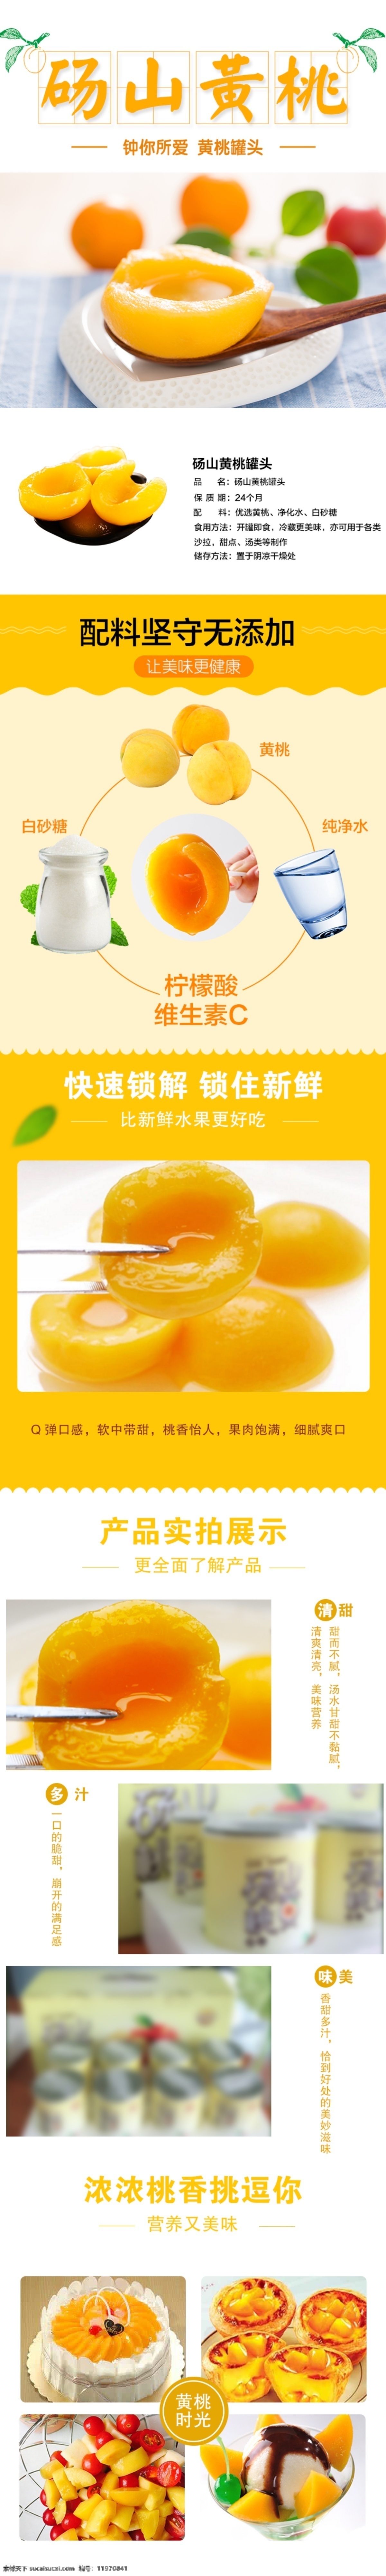 砀山 黄桃 罐头 新鲜 水果 商品 详情 页 详情页 简洁 大气